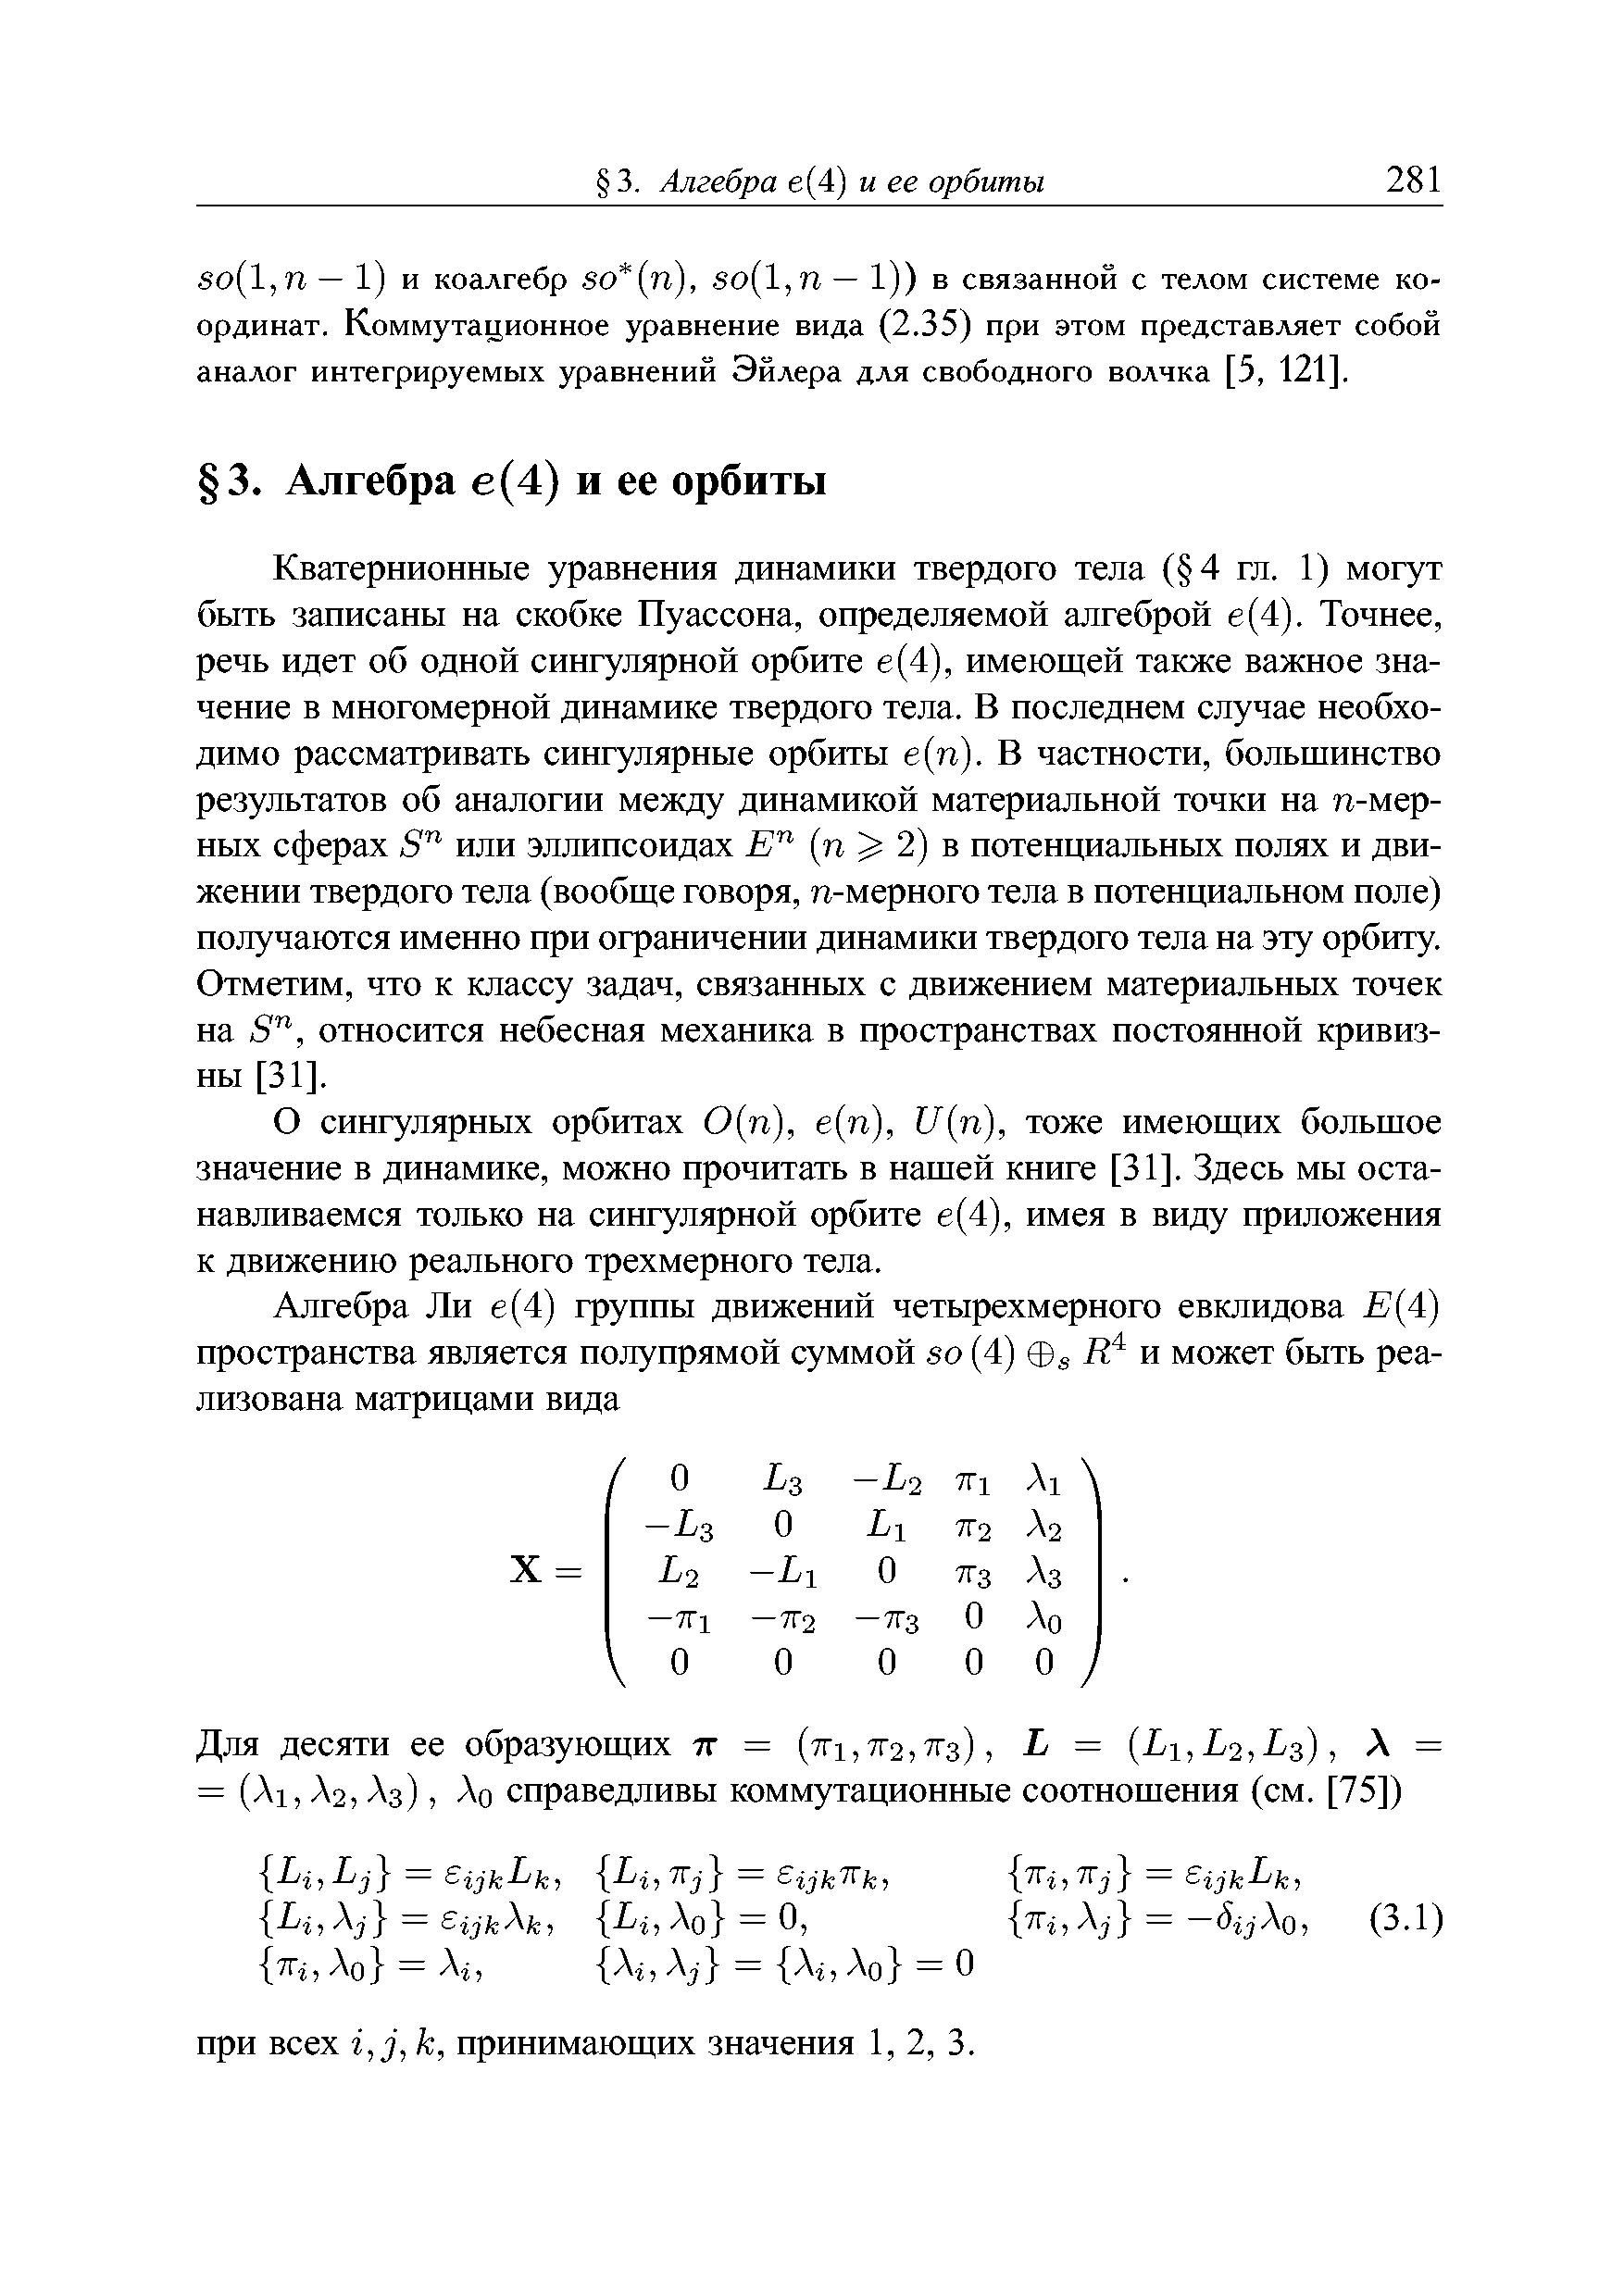 Кватернионные уравнения динамики твердого тела ( 4 гл. 1) могут быть записаны на скобке Пуассона, определяемой алгеброй е(4). Точнее, речь идет об одной сингулярной орбите е(4), имеющей также важное значение в многомерной динамике твердого тела. В последнем случае необходимо рассматривать сингулярные орбиты е(п). В частности, большинство результатов об аналогии между динамикой материальной точки на п-мер-ных сферах б или эллипсоидах (п 2) в потенциальных полях и движении твердого тела (вообще говоря, п-мерного тела в потенциальном поле) получаются именно при ограничении динамики твердого тела на эту орбиту. Отметим, что к классу задач, связанных с движением материальных точек на б , относится небесная механика в пространствах постоянной кривизны [31].
